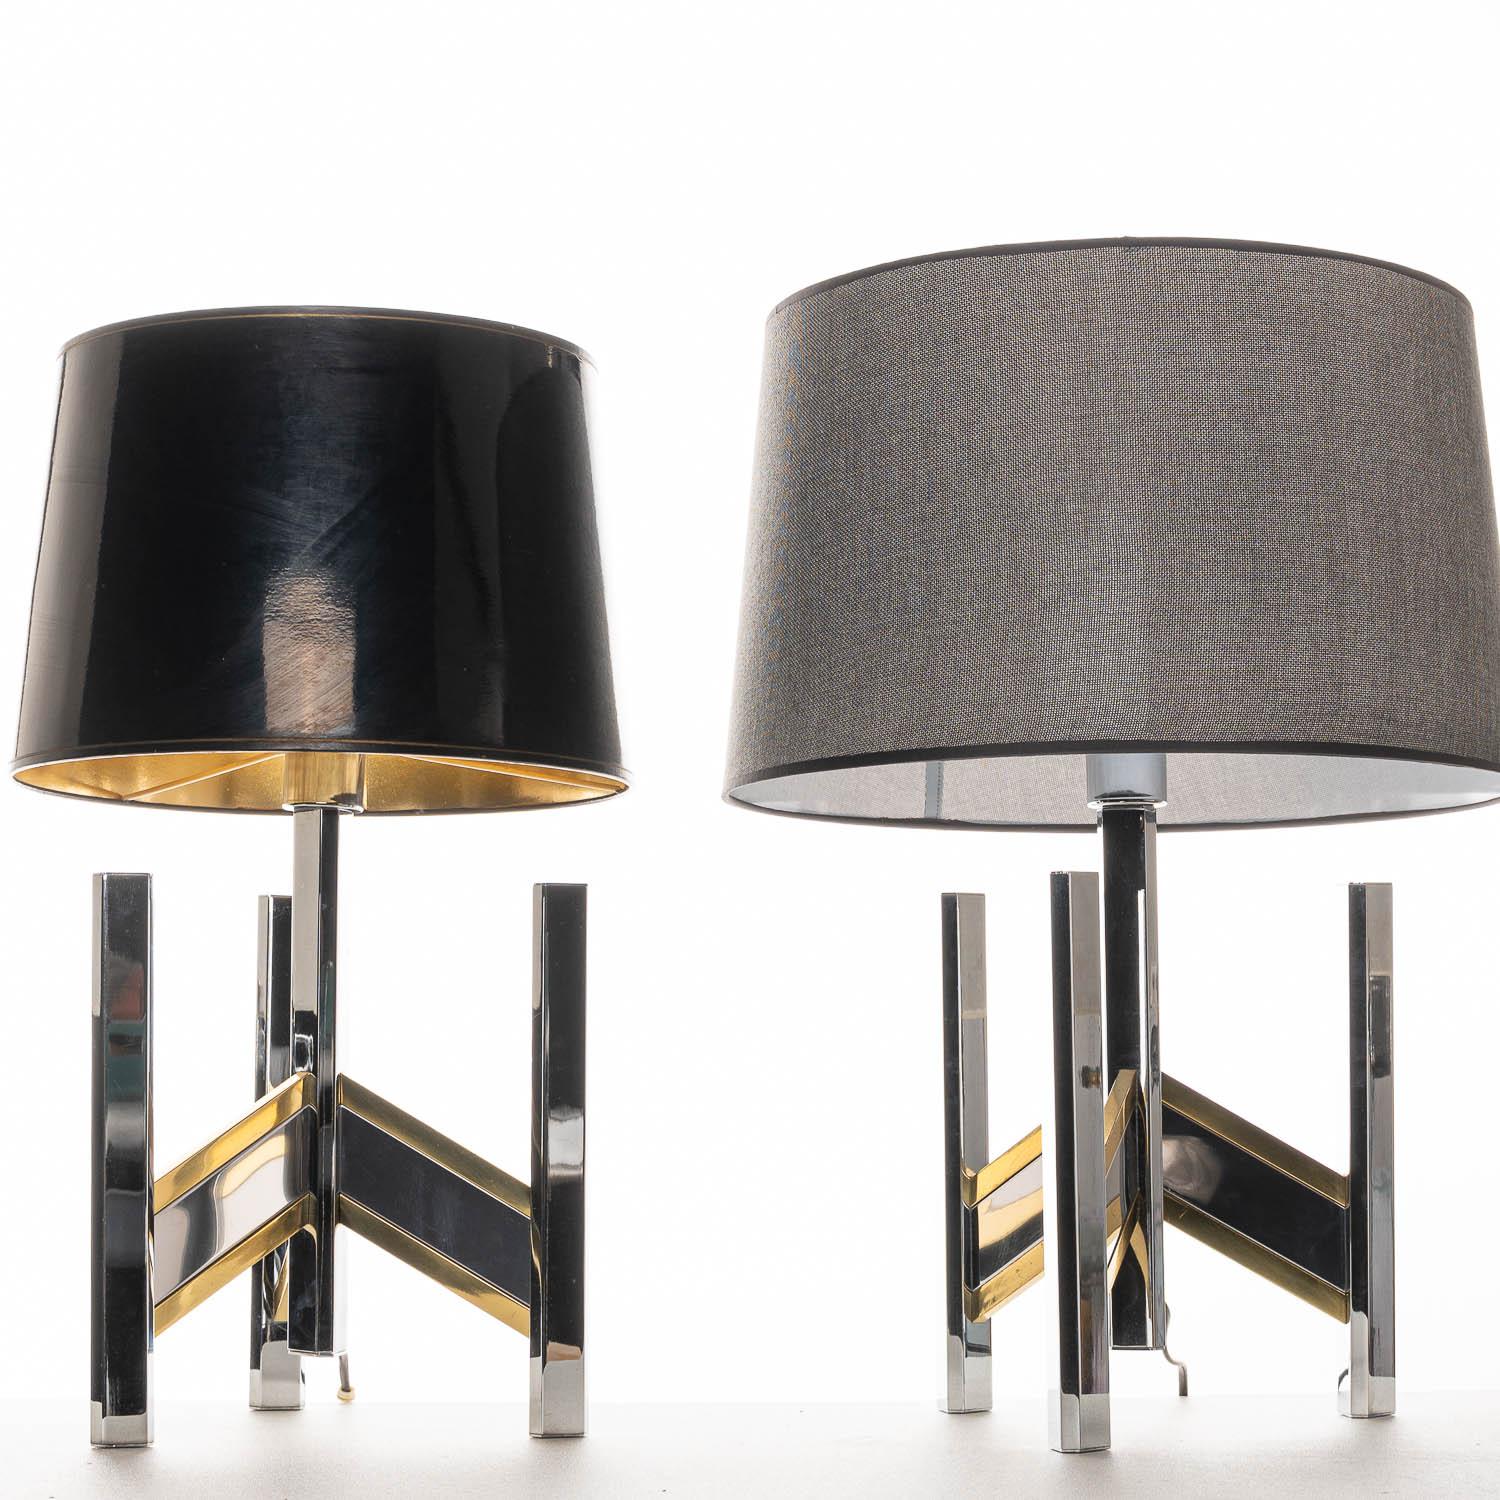 1970’s Brass & Chrome Table Lamps, Classic Concorde Design by Gaetano Sciolari For Sale 5